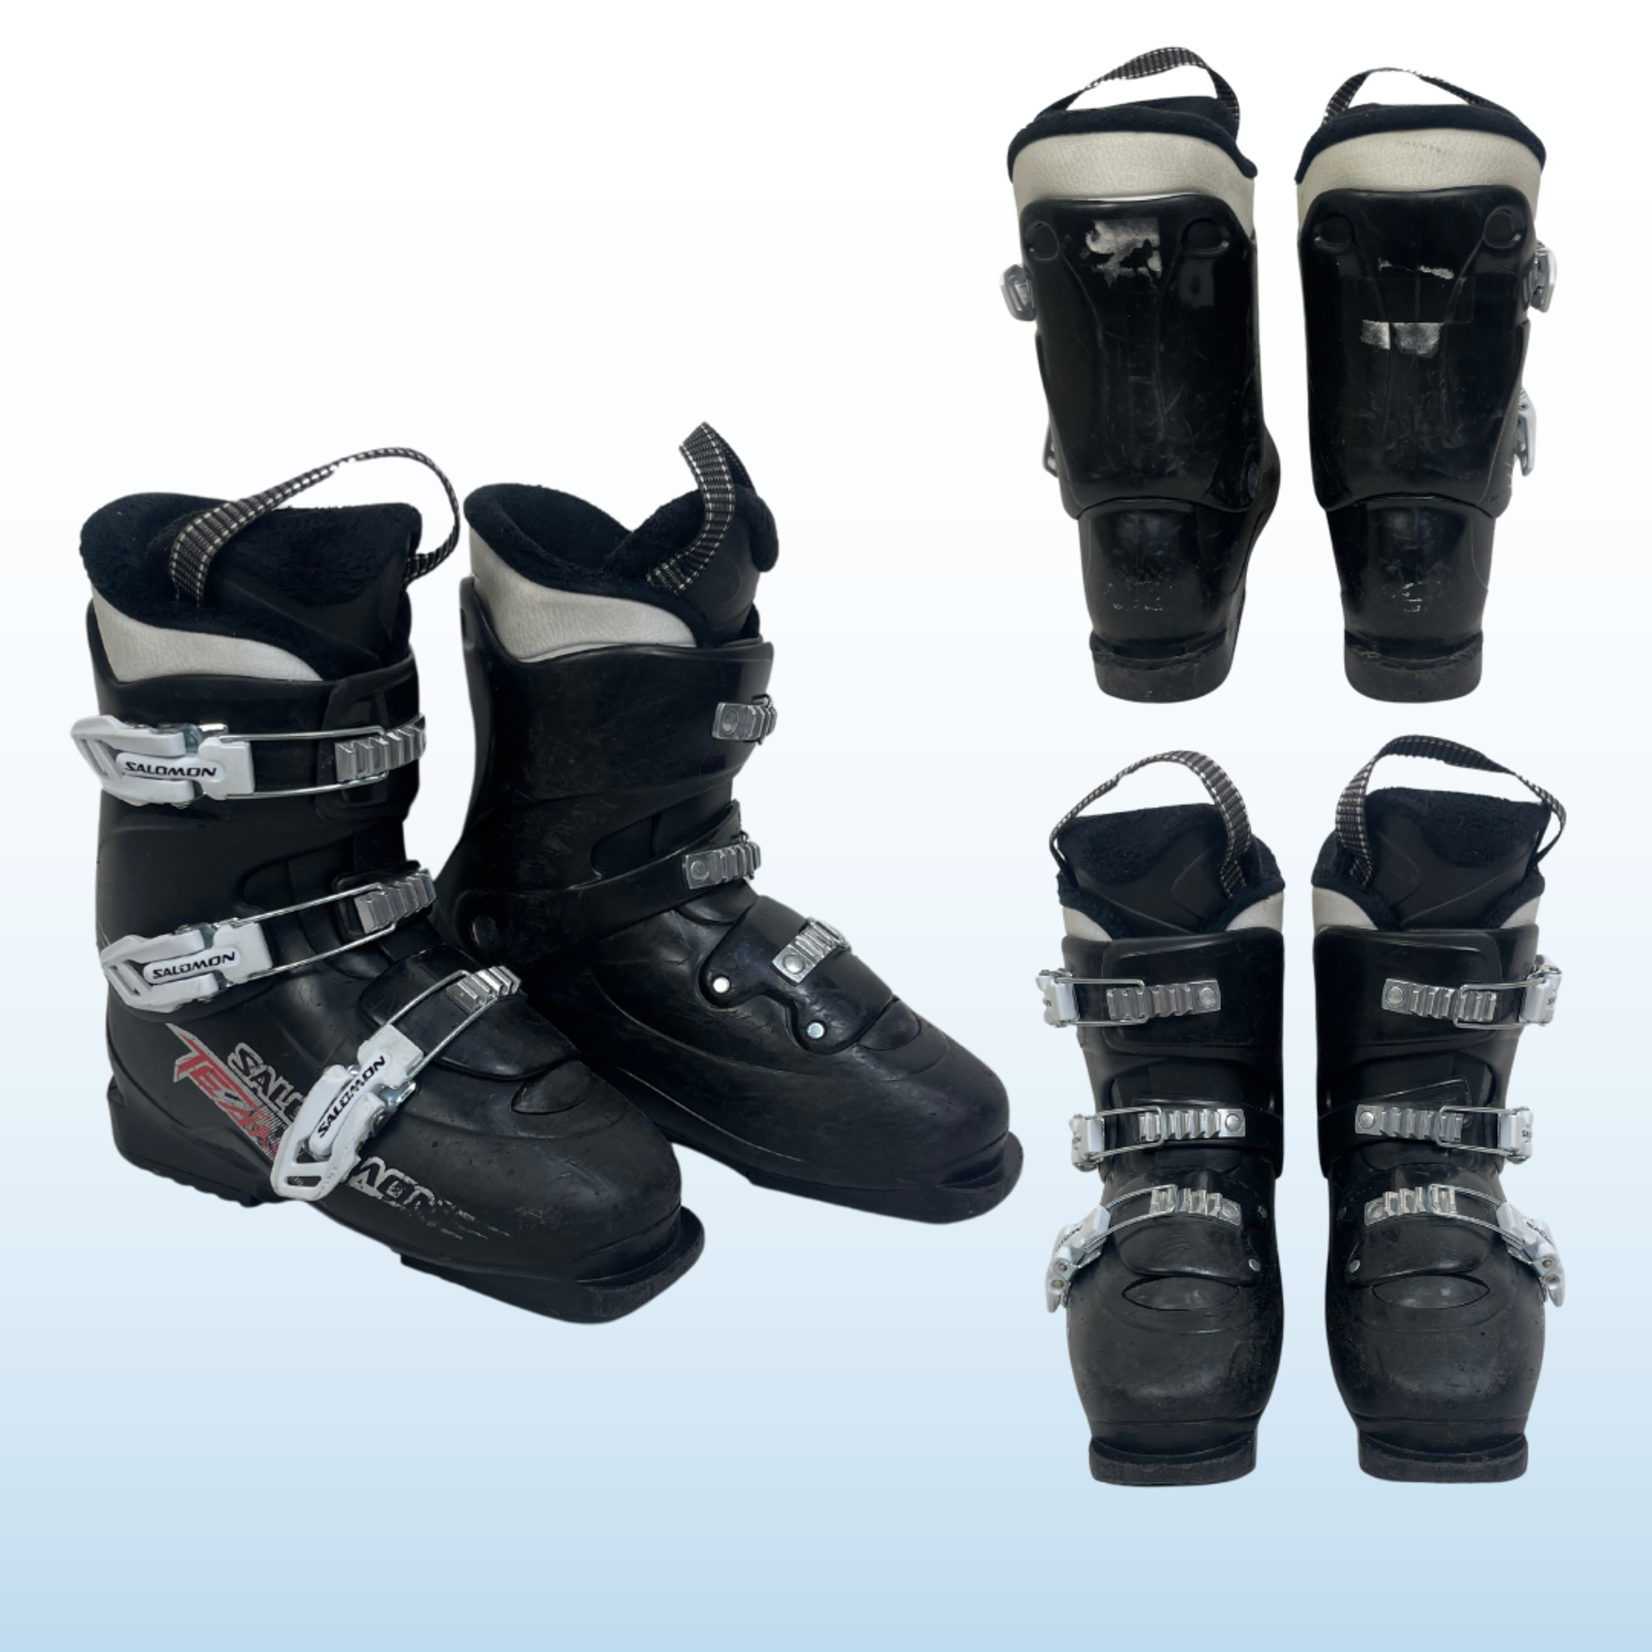 Nordica Nordica Firearrow Team T3 Kids Ski Boots, Size 24